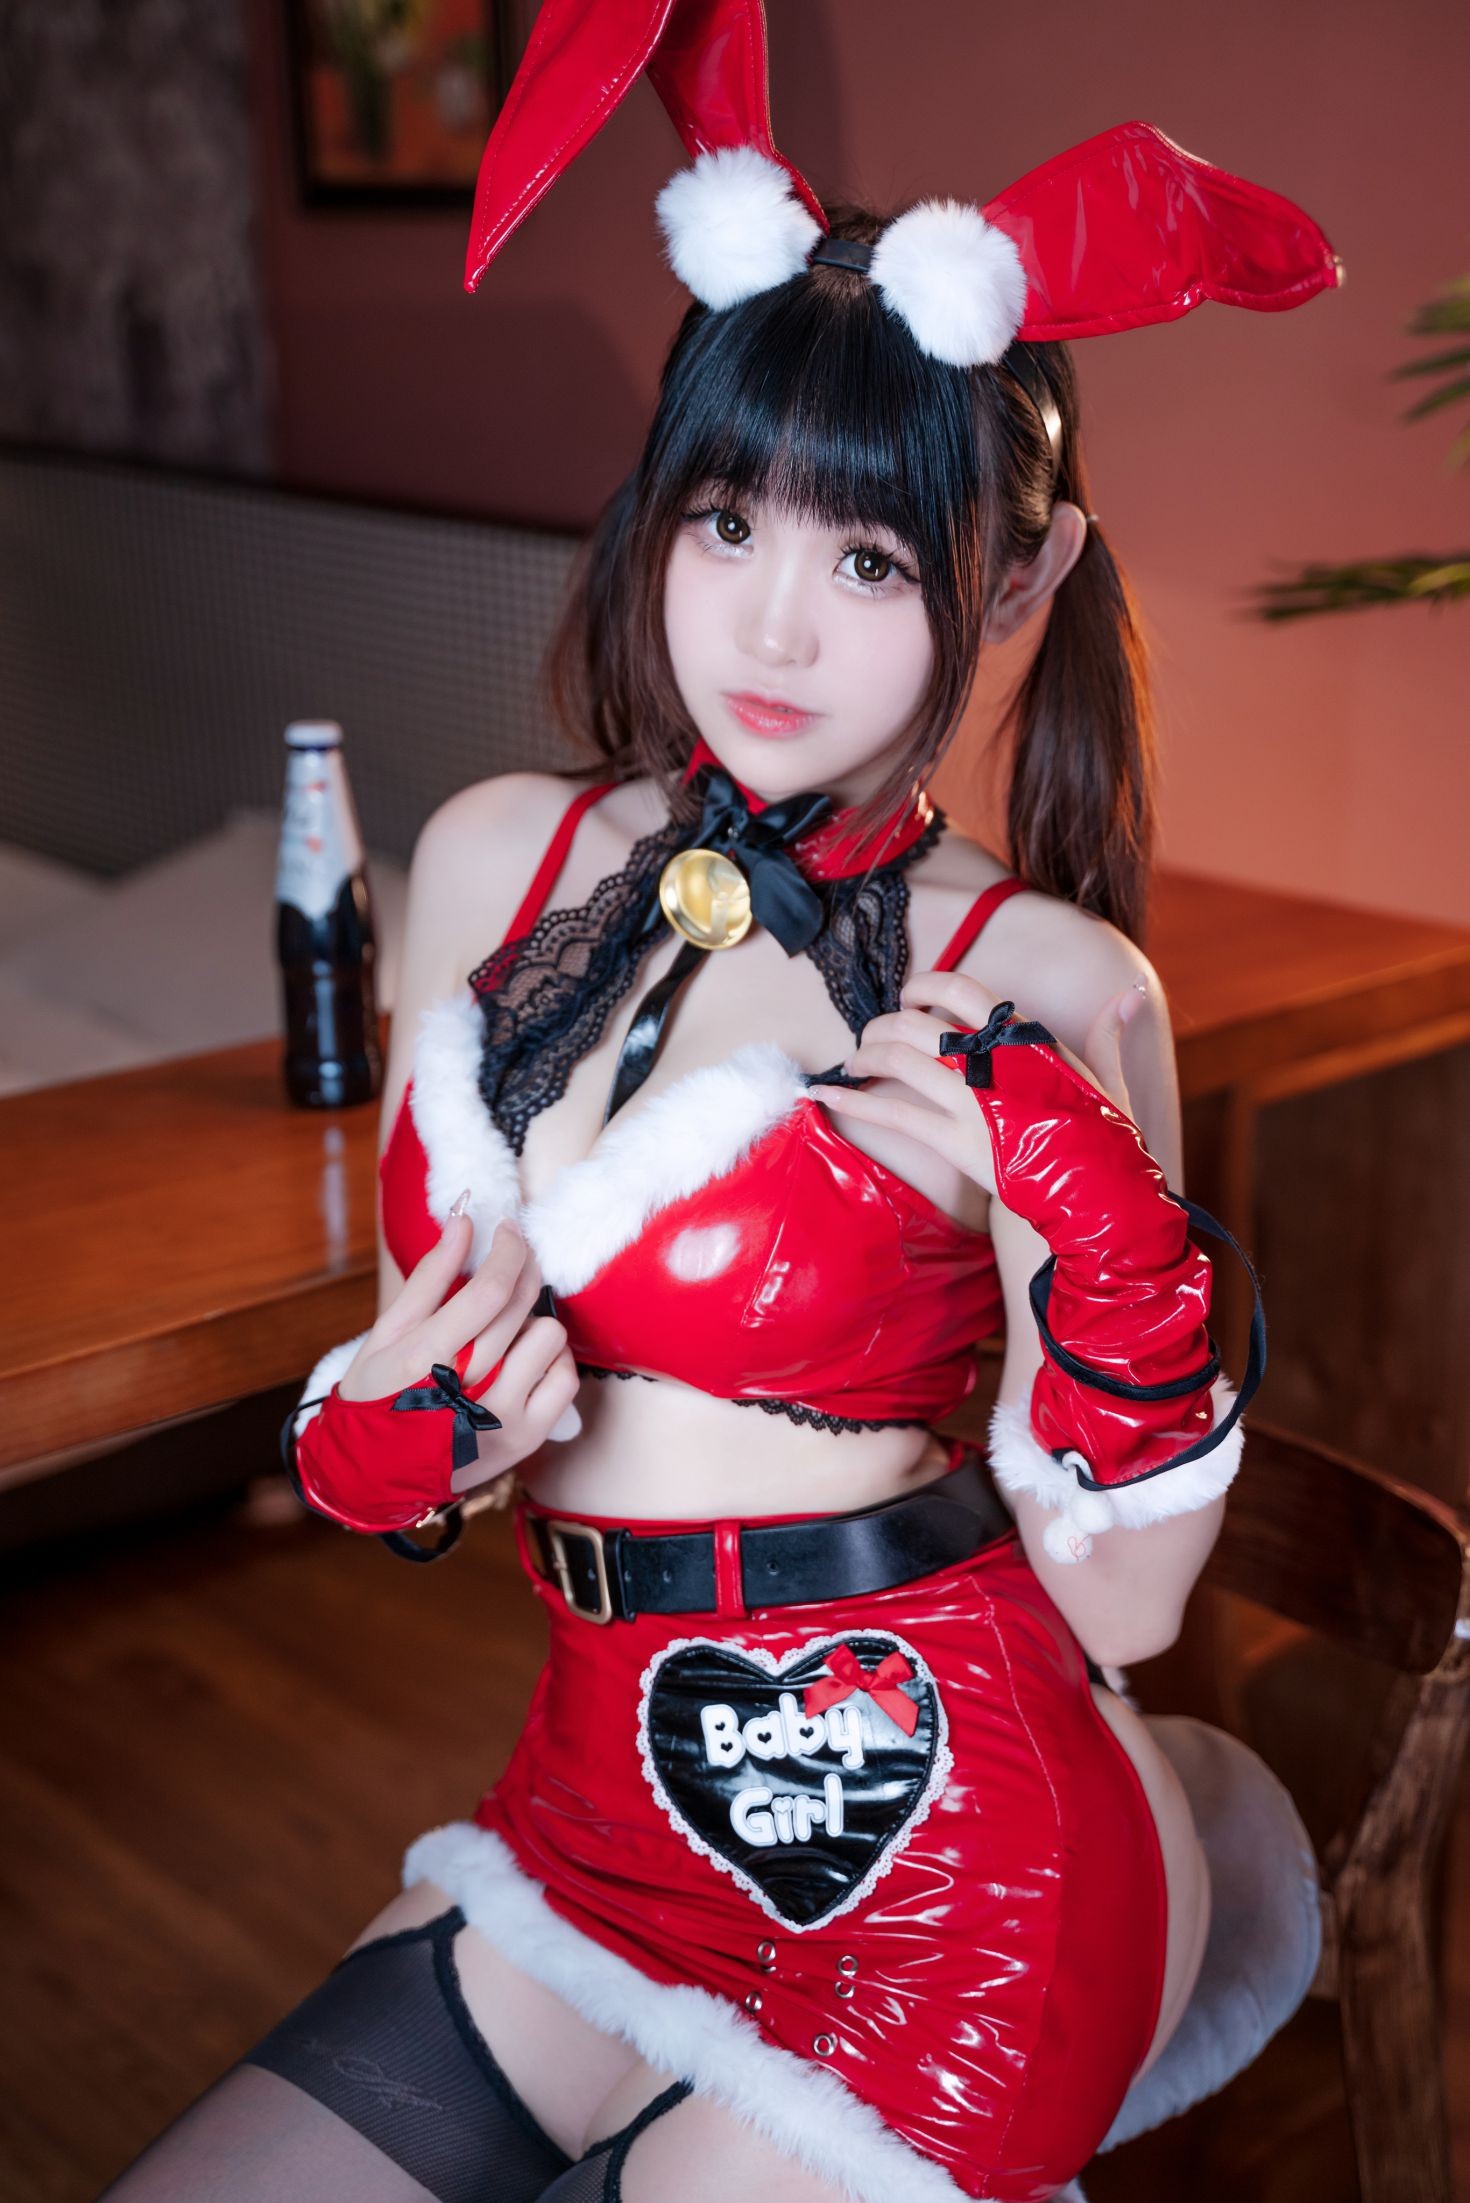 美女动漫博主miko酱性感Cosplay写真圣诞兔兔 (5)